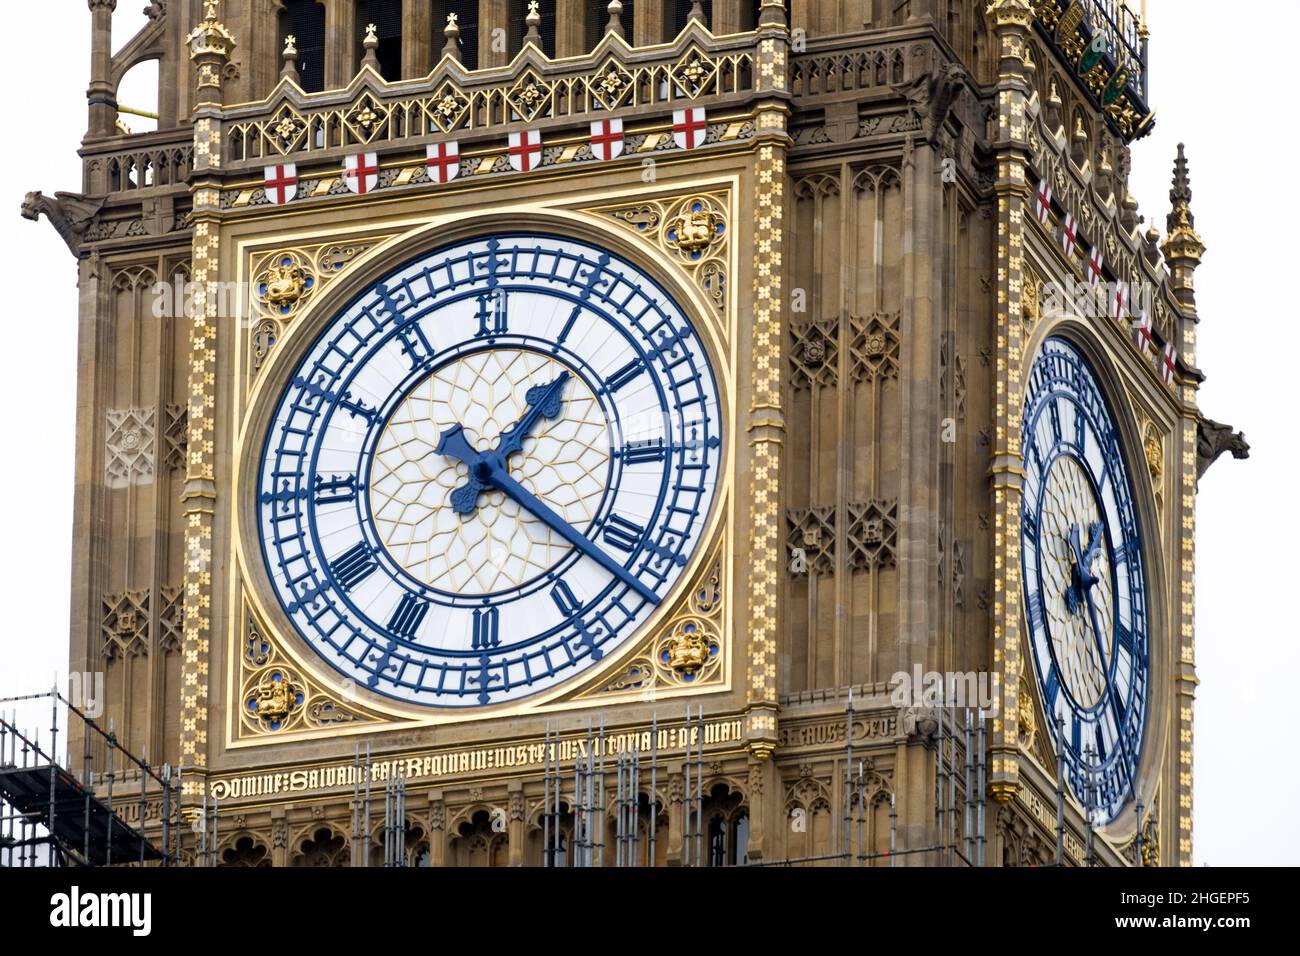 Restaurierte Uhr des Big Ben Uhrturms mit Restaurierung der original preußisch-blauen Farbe für die Zeiger und das Gesicht der Uhr. Stockfoto